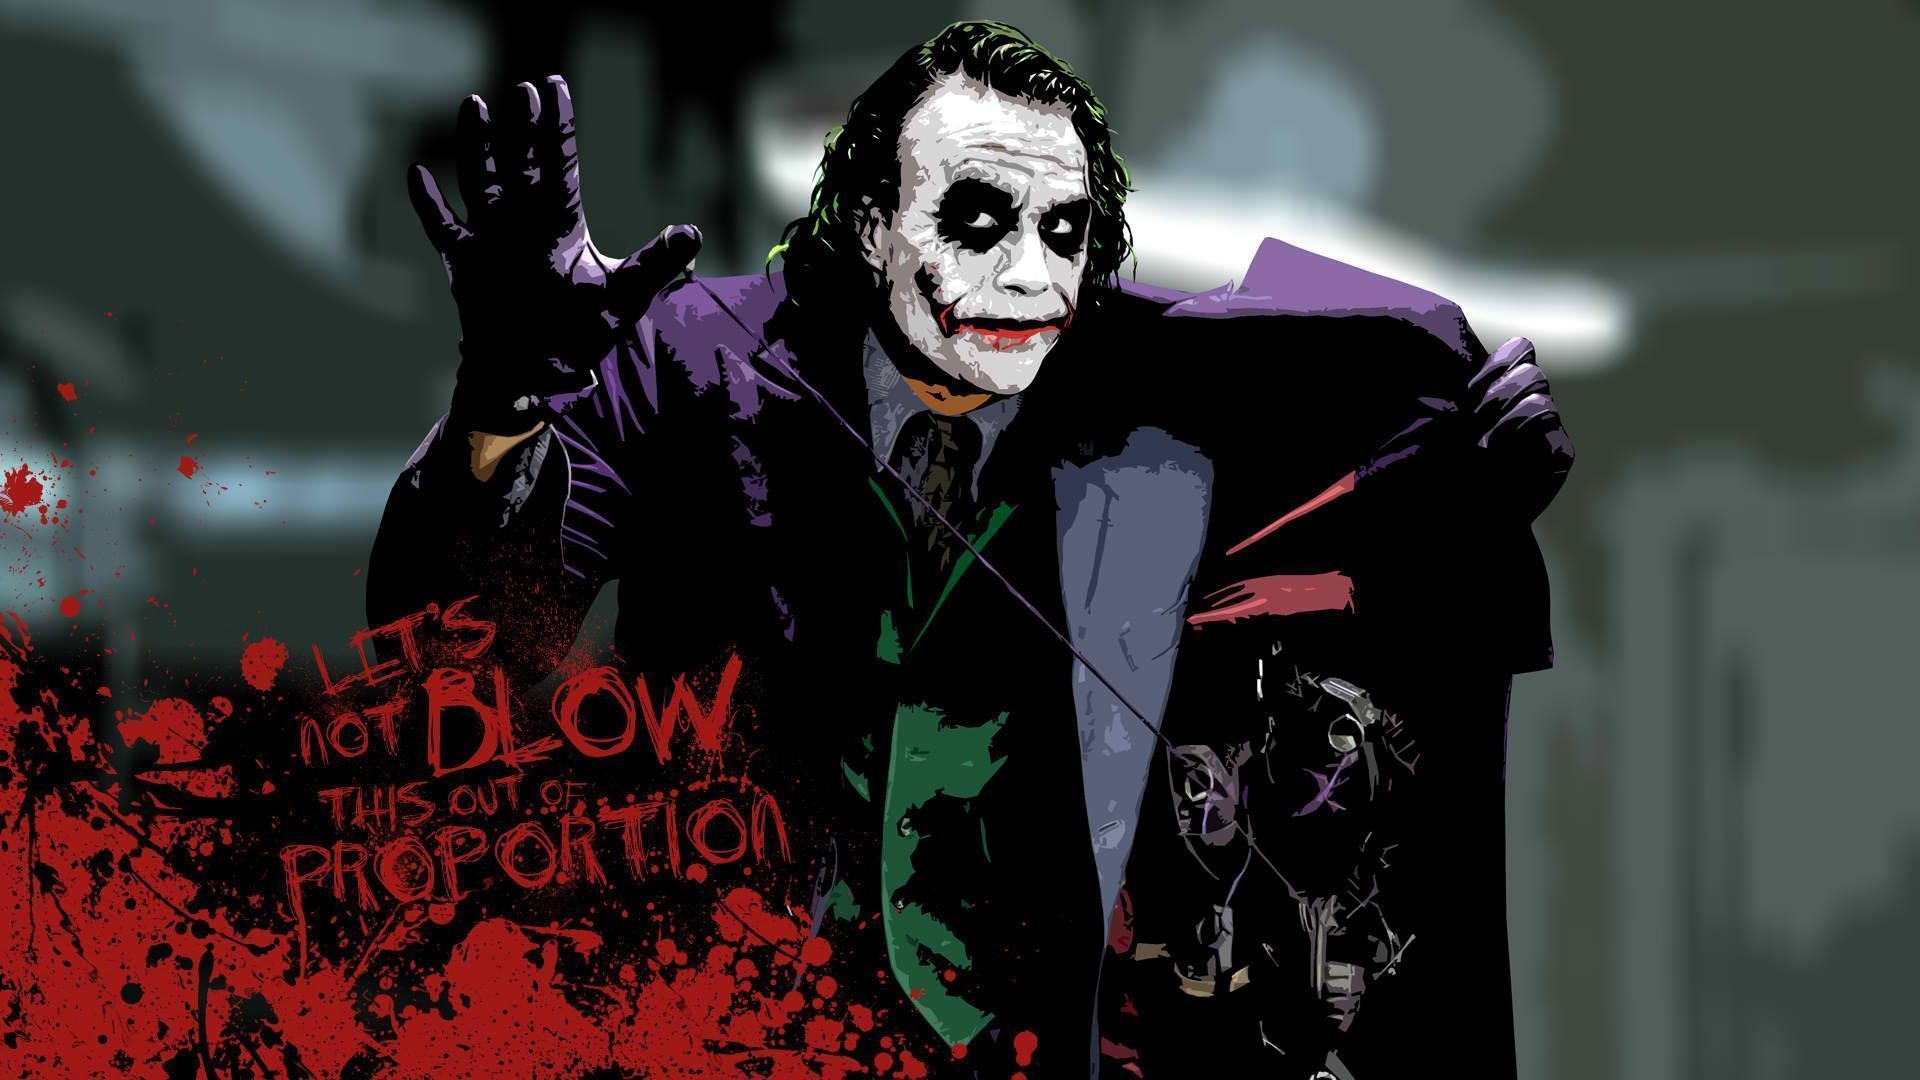 1920x1080 Batman Joker Wallpaper Dark Knight Images & Pictures - Becuo